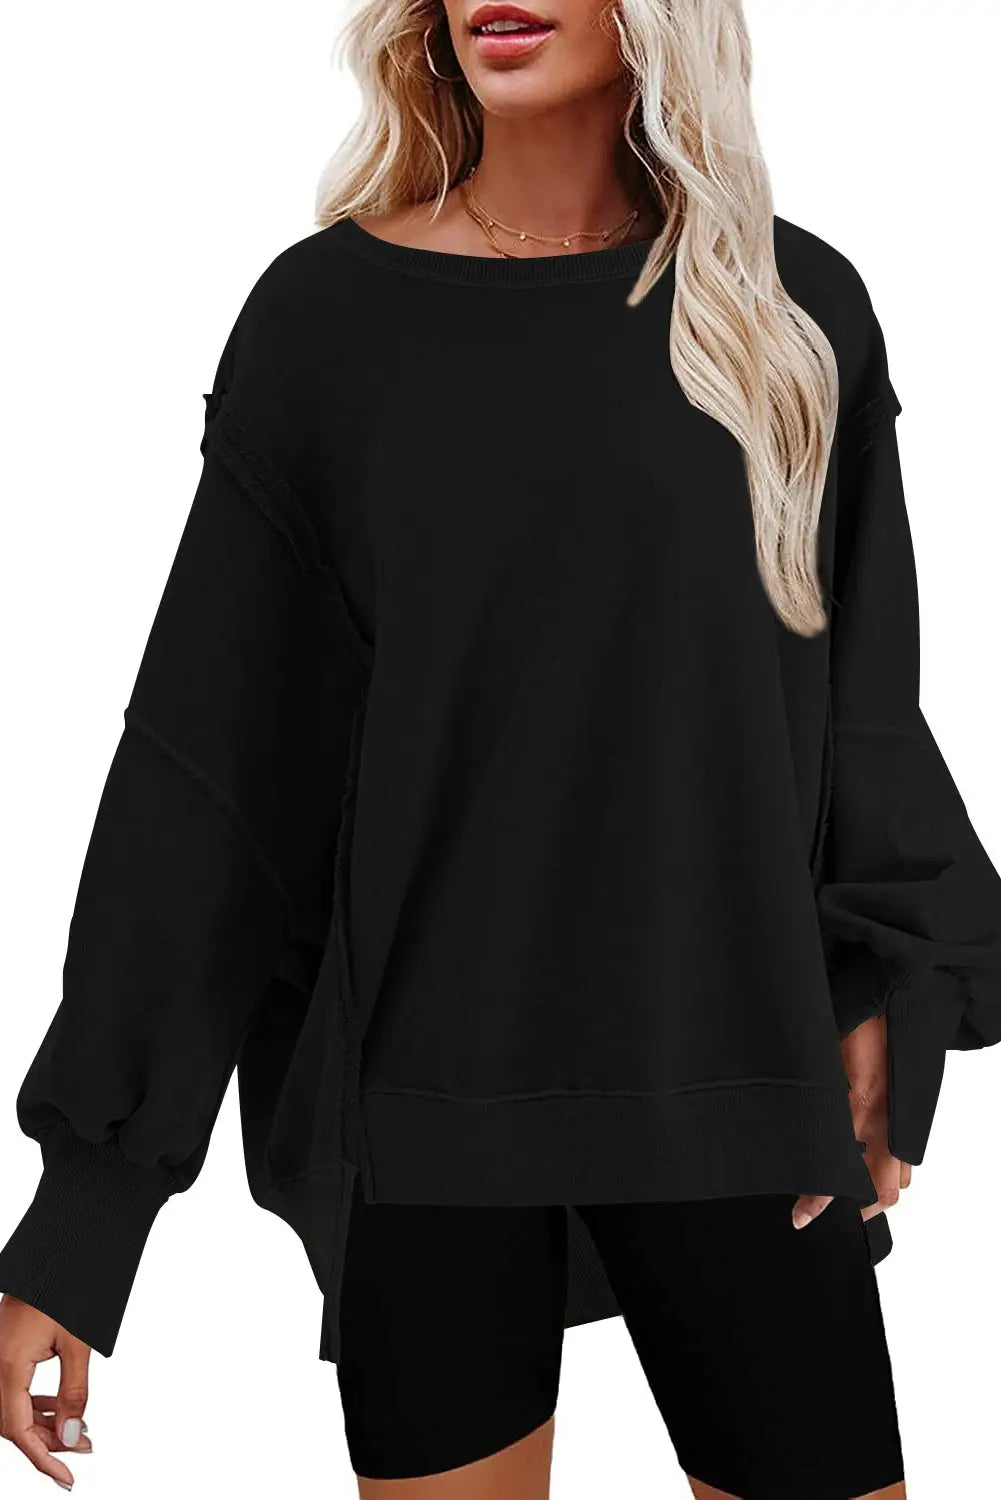 Black exposed seam drop shoulder slit high low hem sweatshirt - sweatshits & hoodies